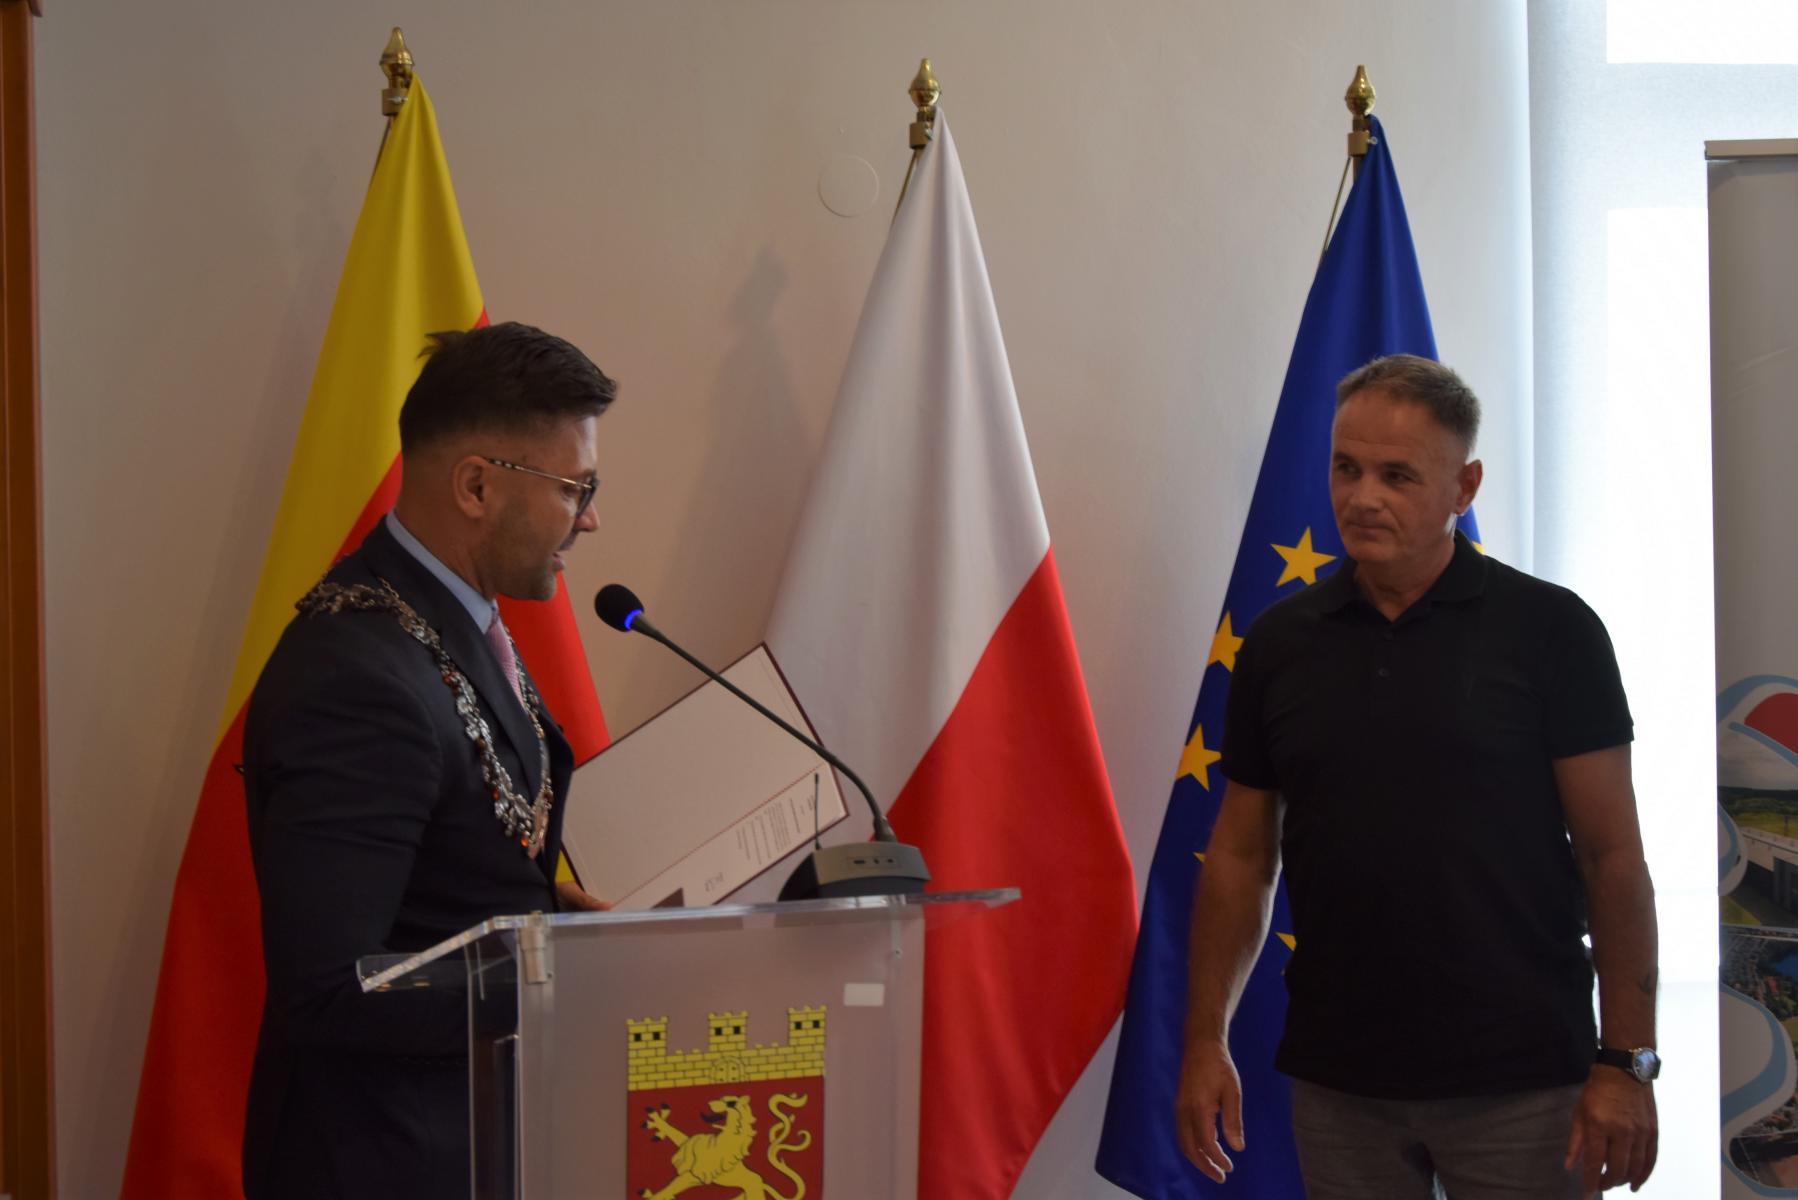 Od lewej przewodniczący przy mównicy, obok stoi mężczyzna Mieczysław Kukuruza. W tle flaga Dębna, Polski, UE